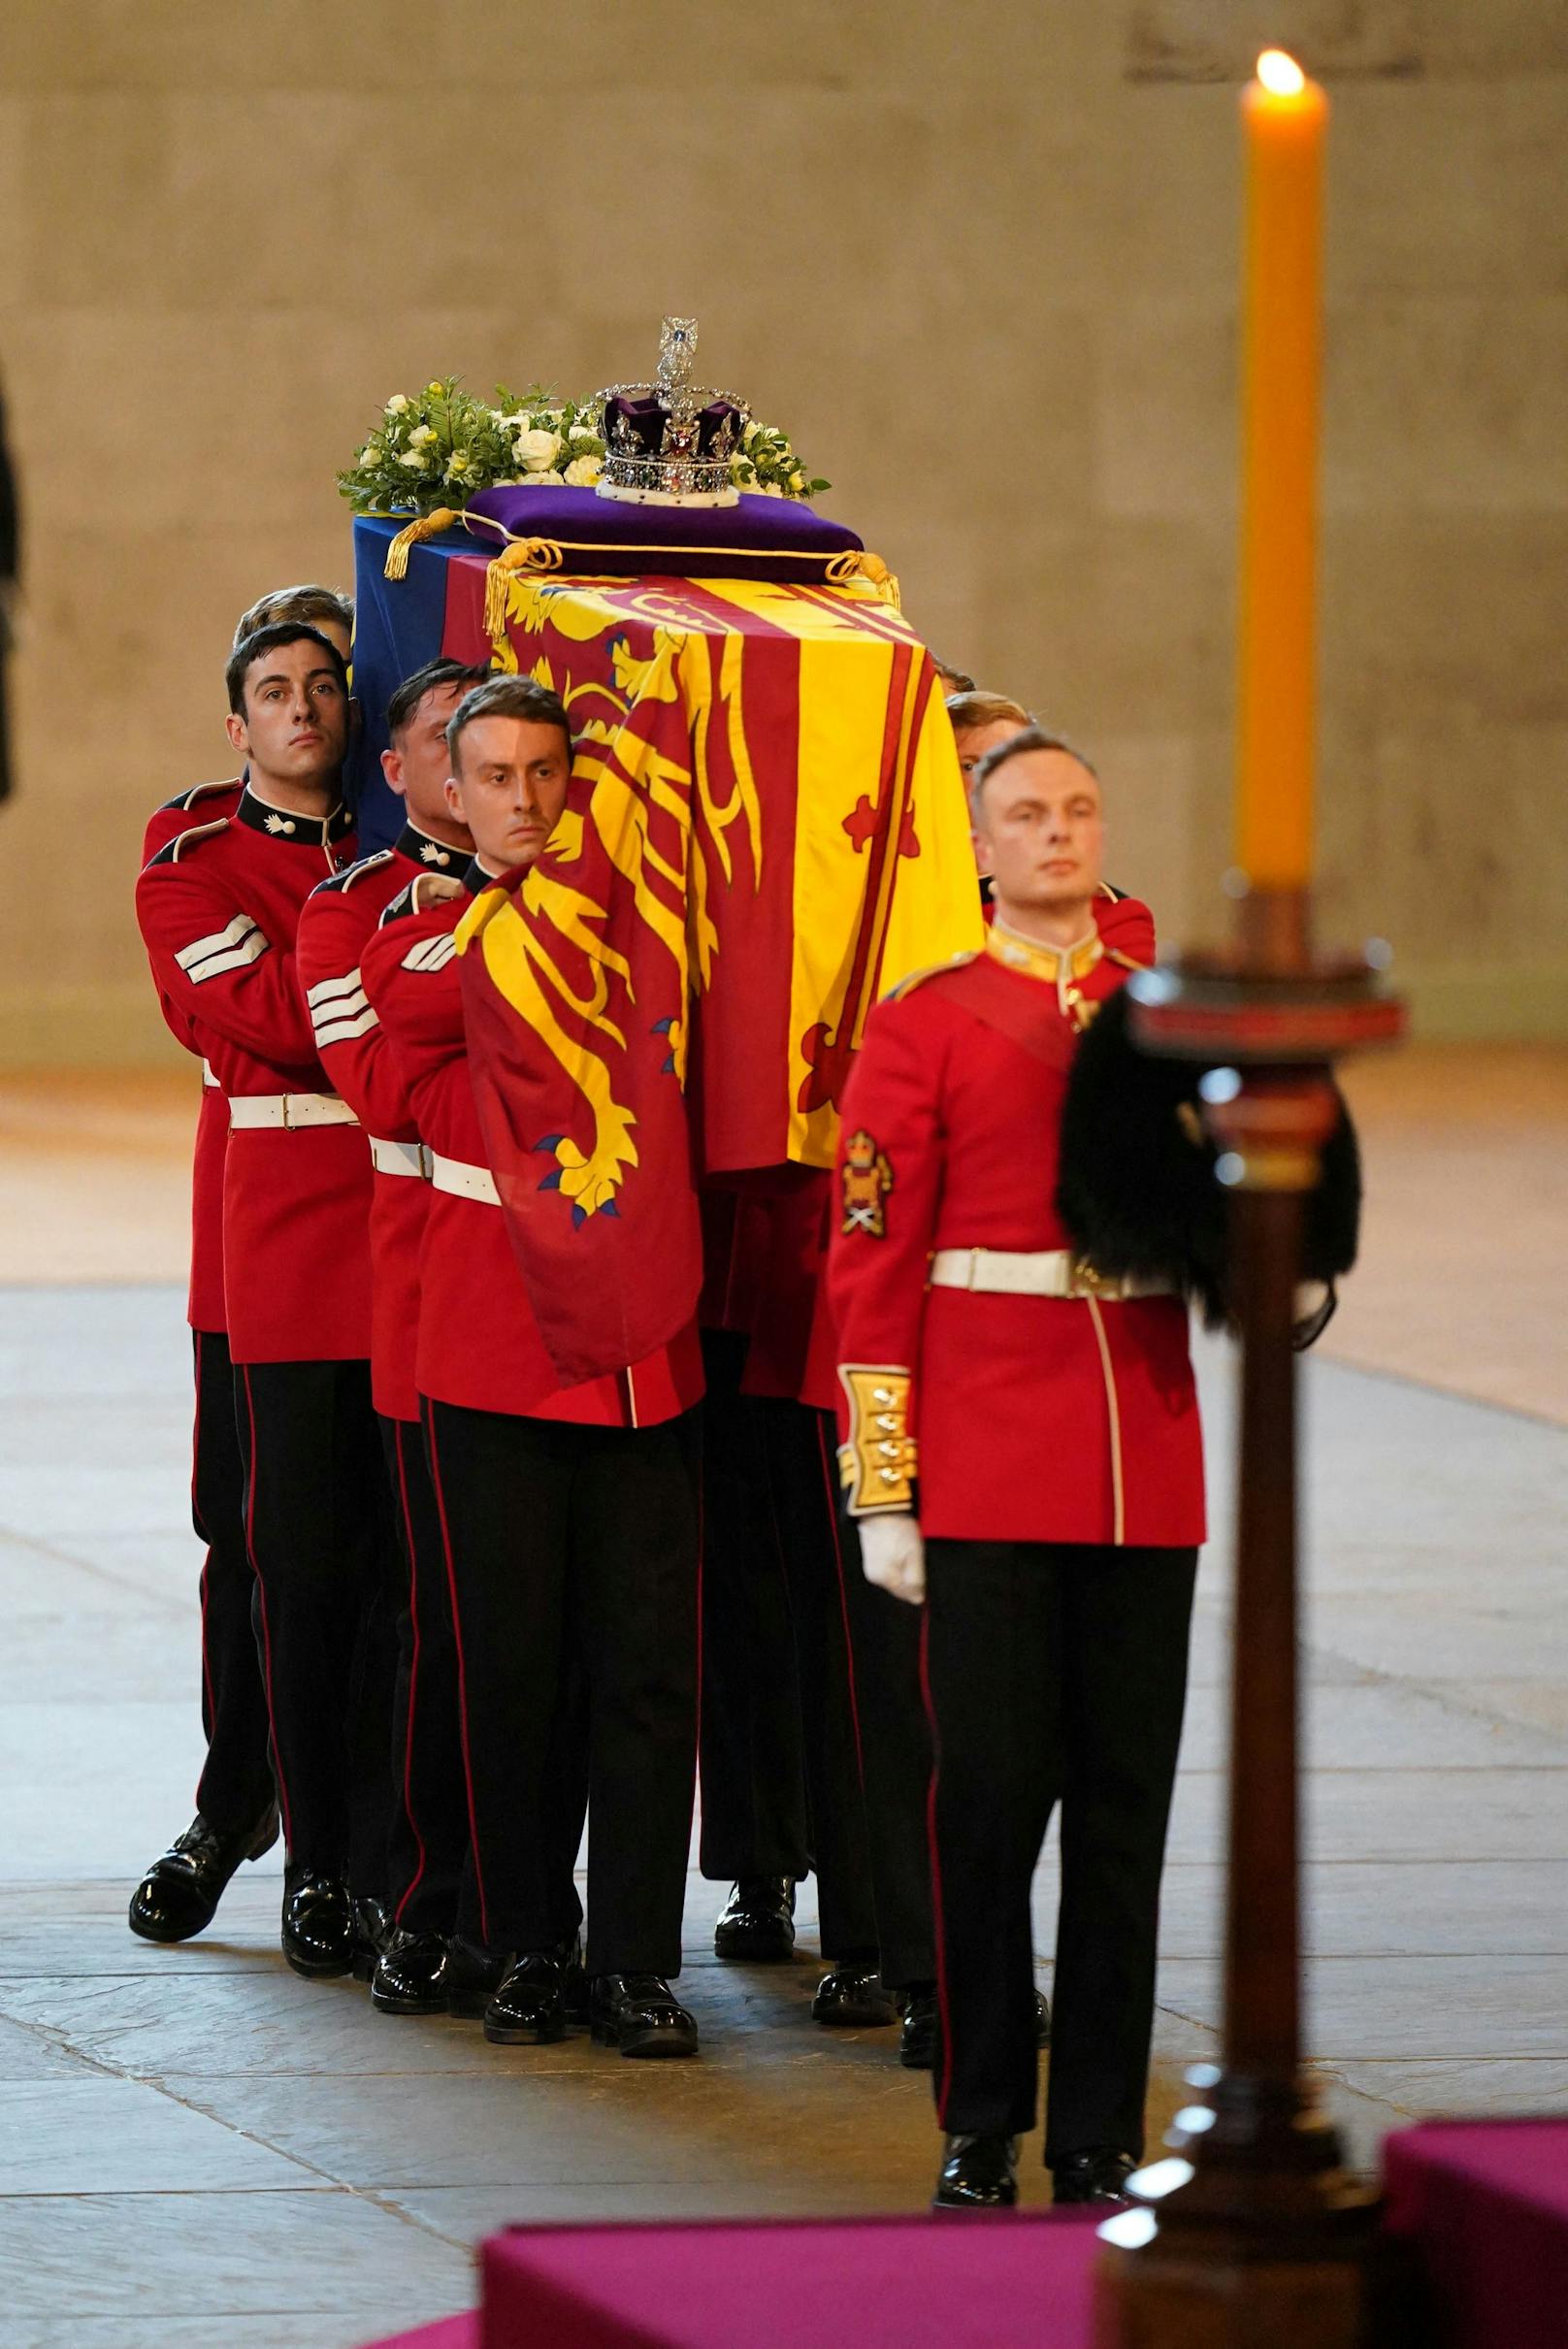 Die Trägergruppe trägt den Sarg von Königin Elizabeth II. in die Westminster Hall in London, wo er vor ihrer Beerdigung am Montag im Staat liegen wird. Bilddatum: Mittwoch, 14. September 2022.